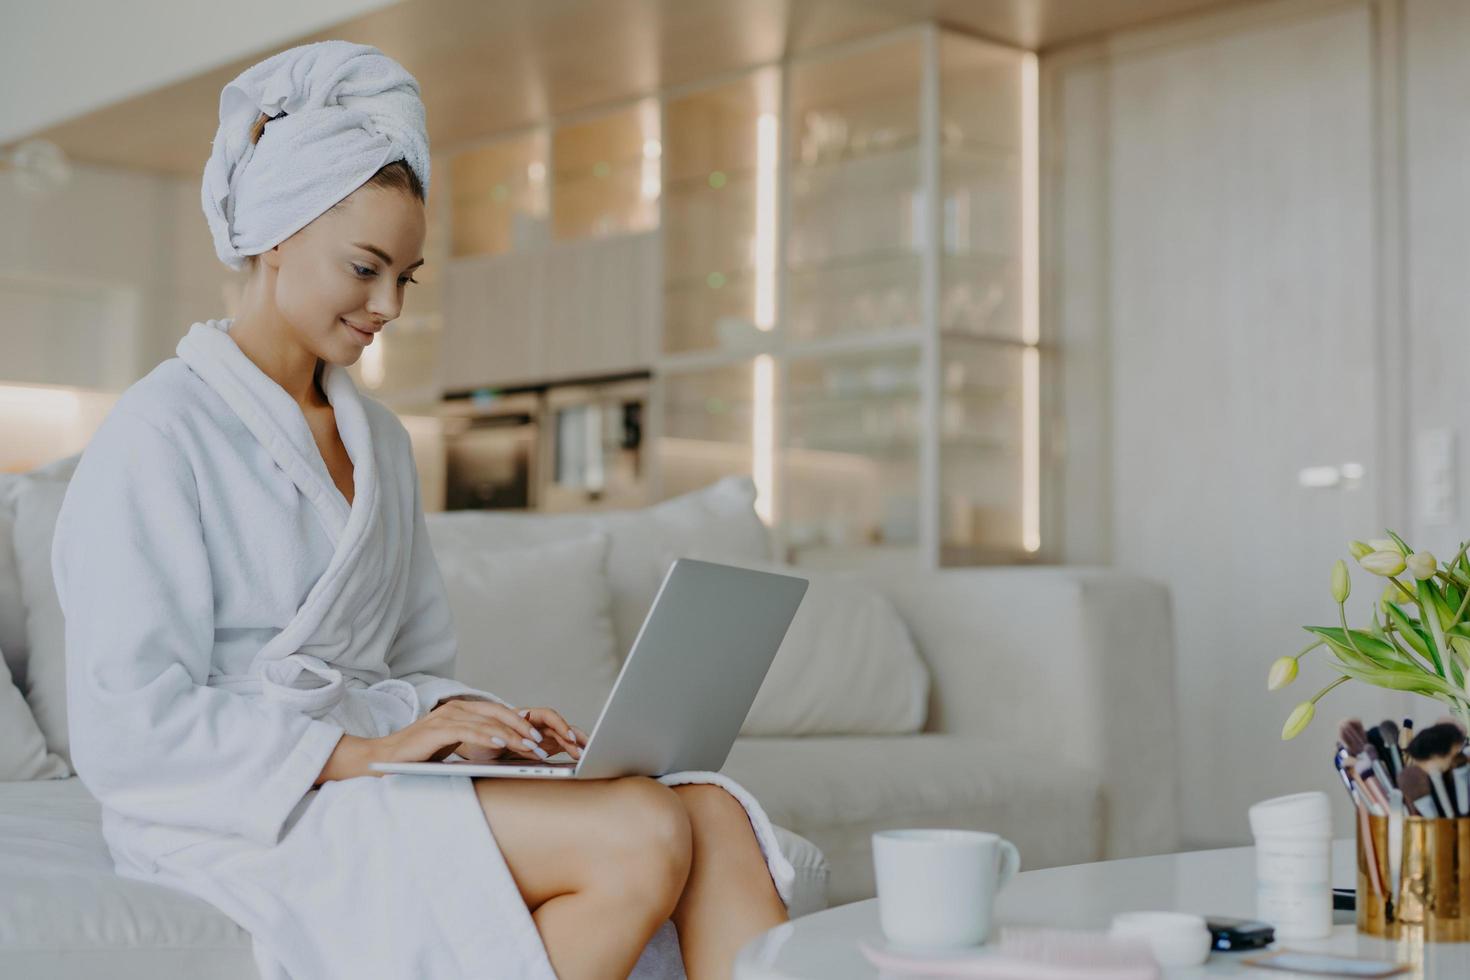 horizontale aufnahme einer zufriedenen schönen frau in einem weißen weichen bademantel arbeitet auf einem laptop surft im internet posiert neben einem tisch mit getränken und kosmetischen produkten sitzt auf einem bequemen sofa foto